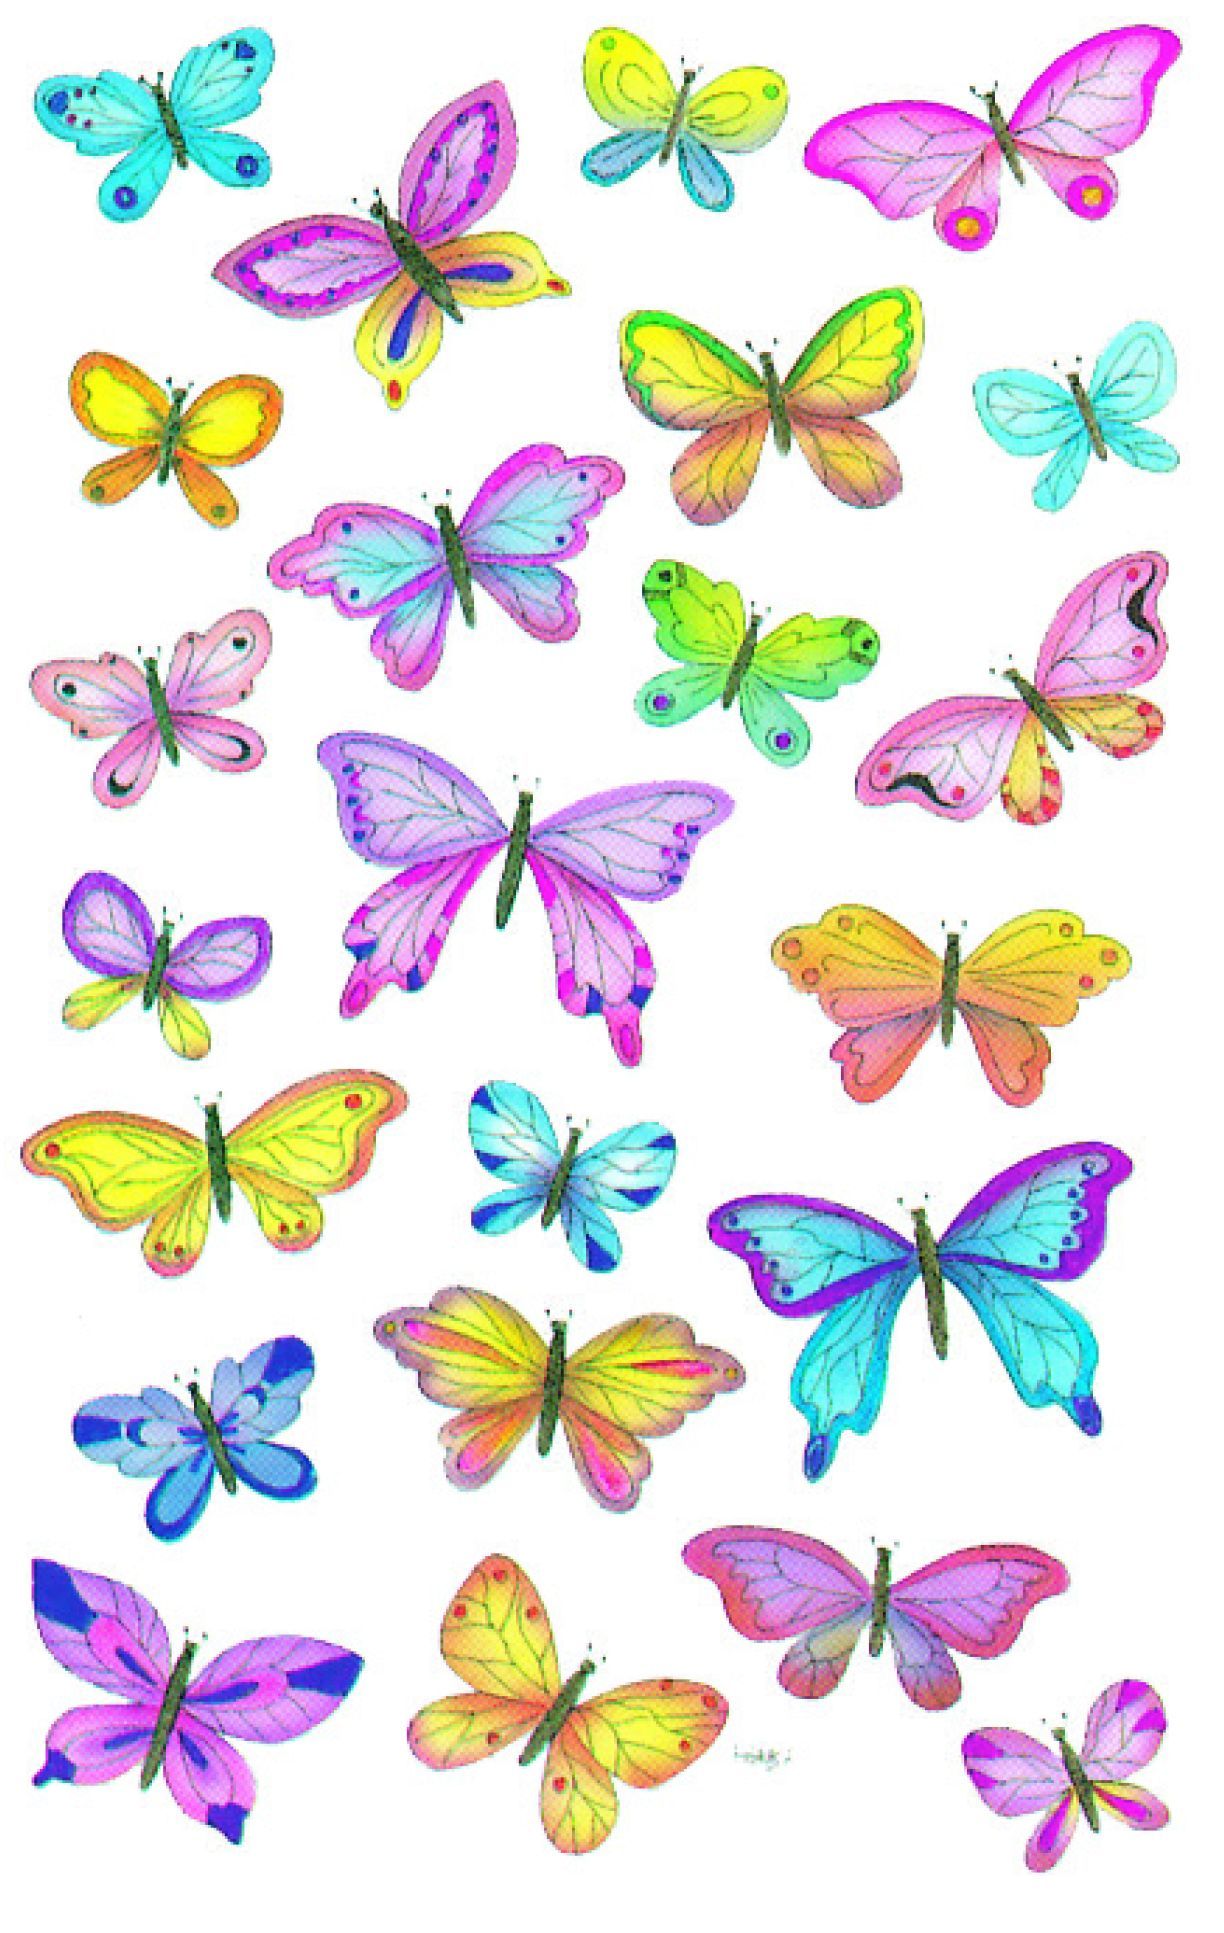 Z-Design 4390, Deko Sticker, Schmetterlinge, 3 Bogen/69 Sticker